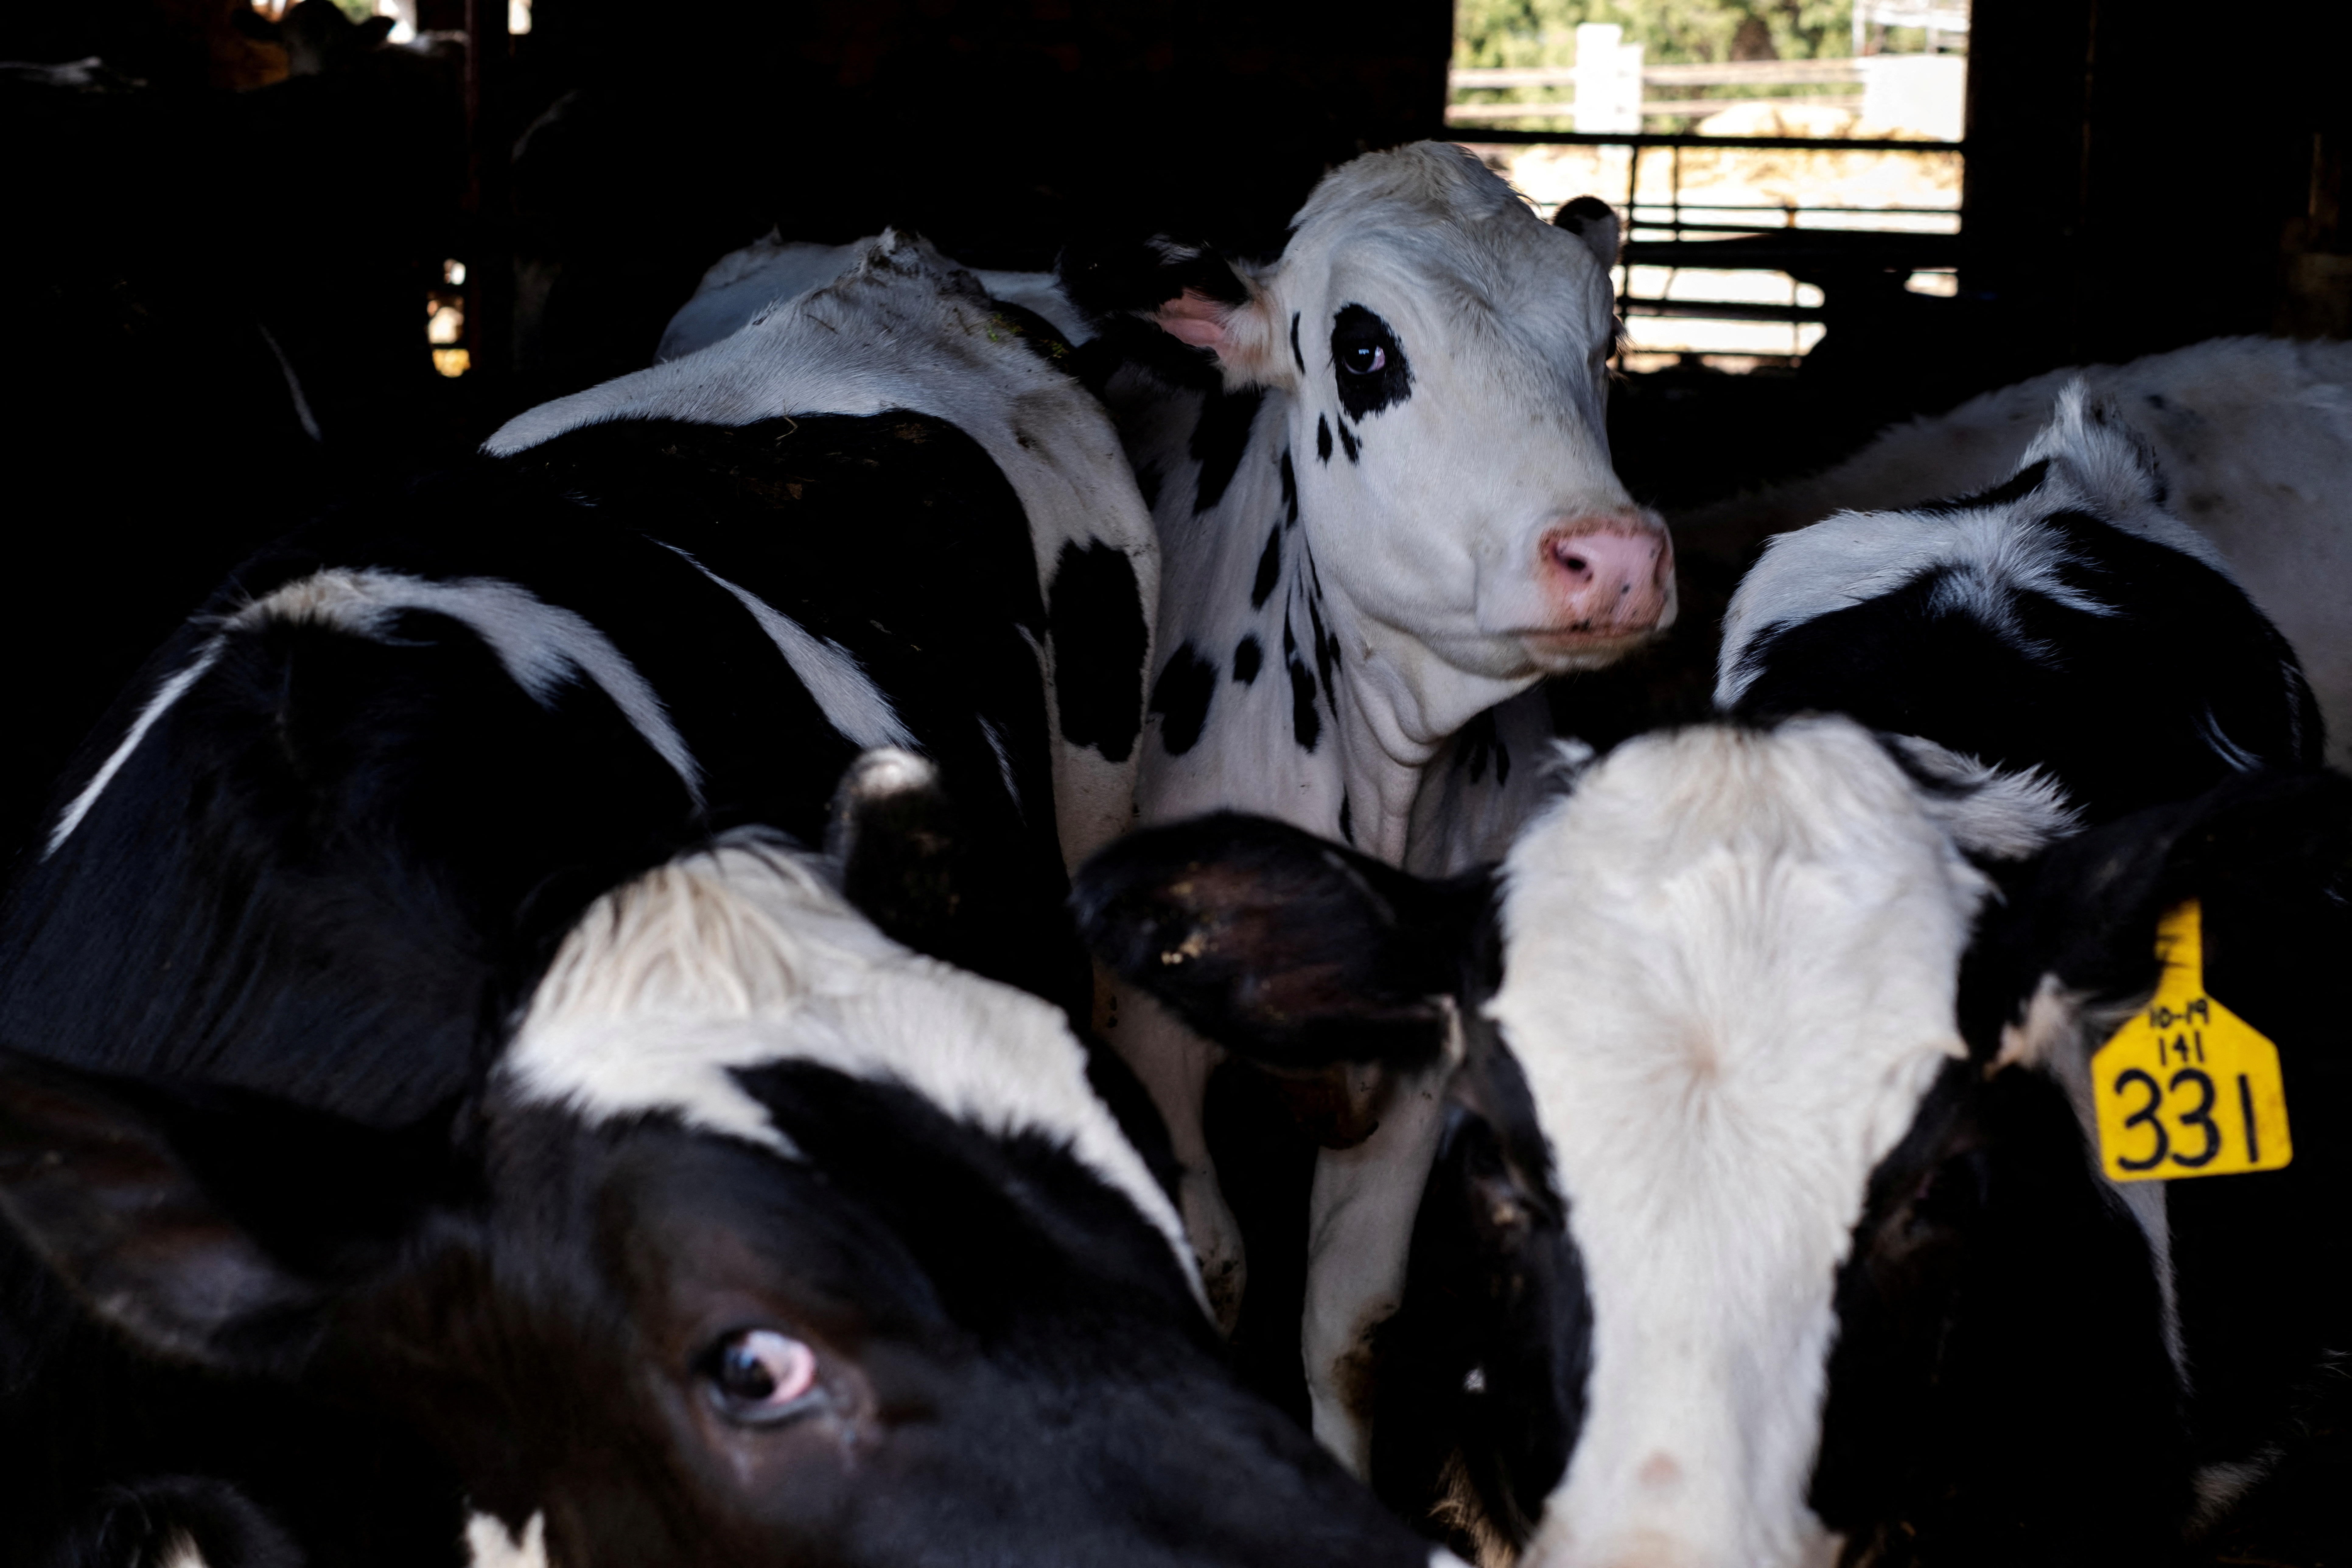 米政府、他州へ移動する乳牛に鳥インフル検査義務付け